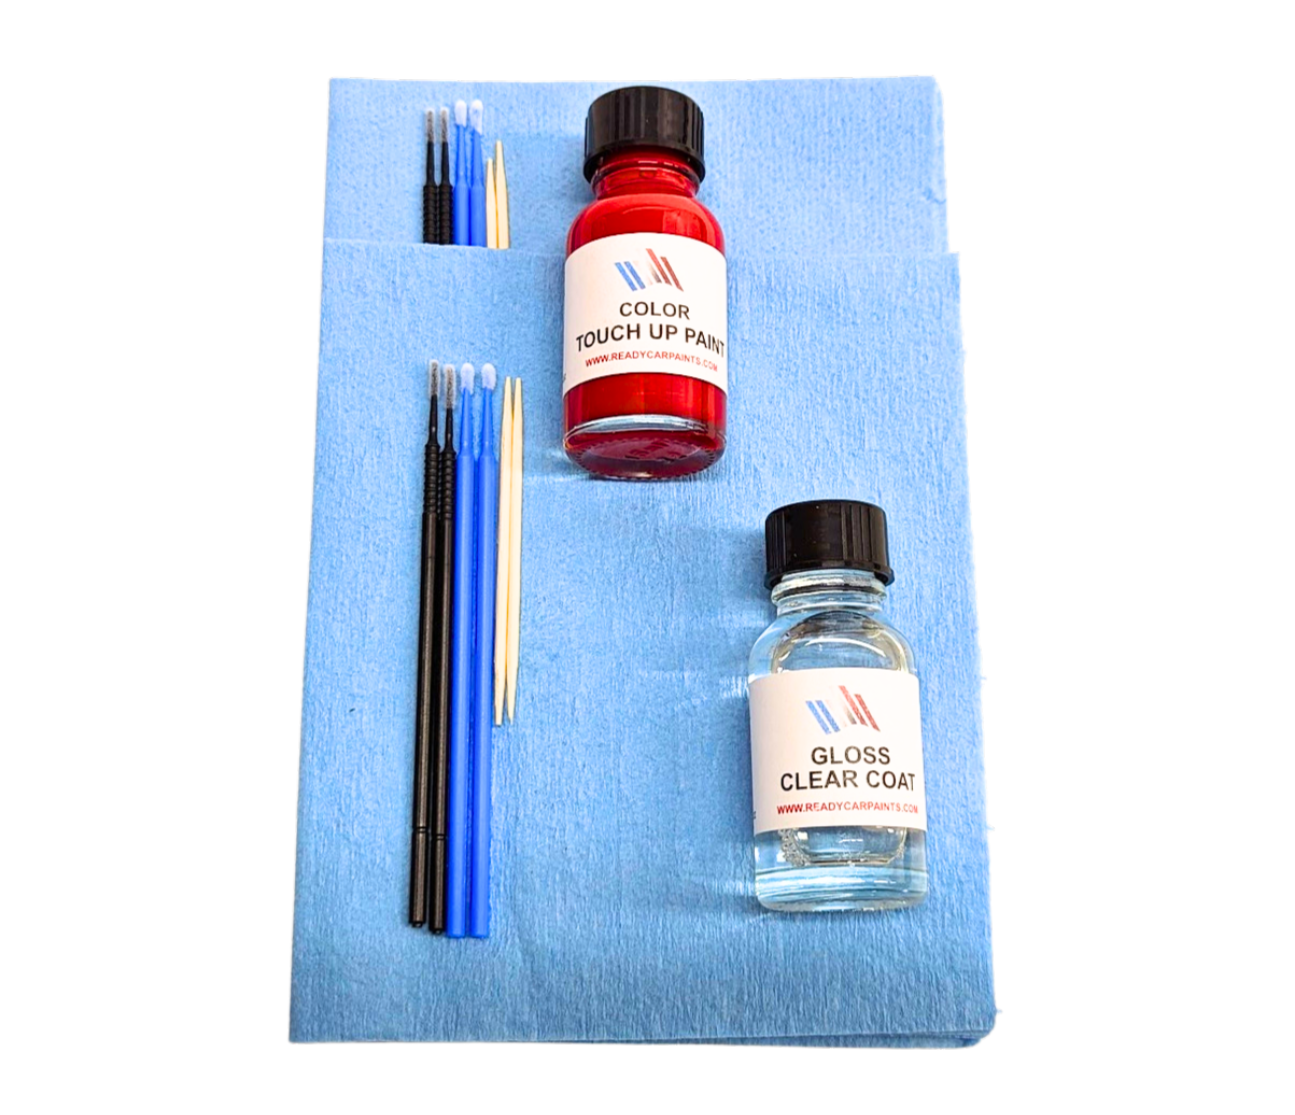 MINI COOPER C24 Lapisluxury Blue Touch Up Paint Kit 100% OEM Color Match